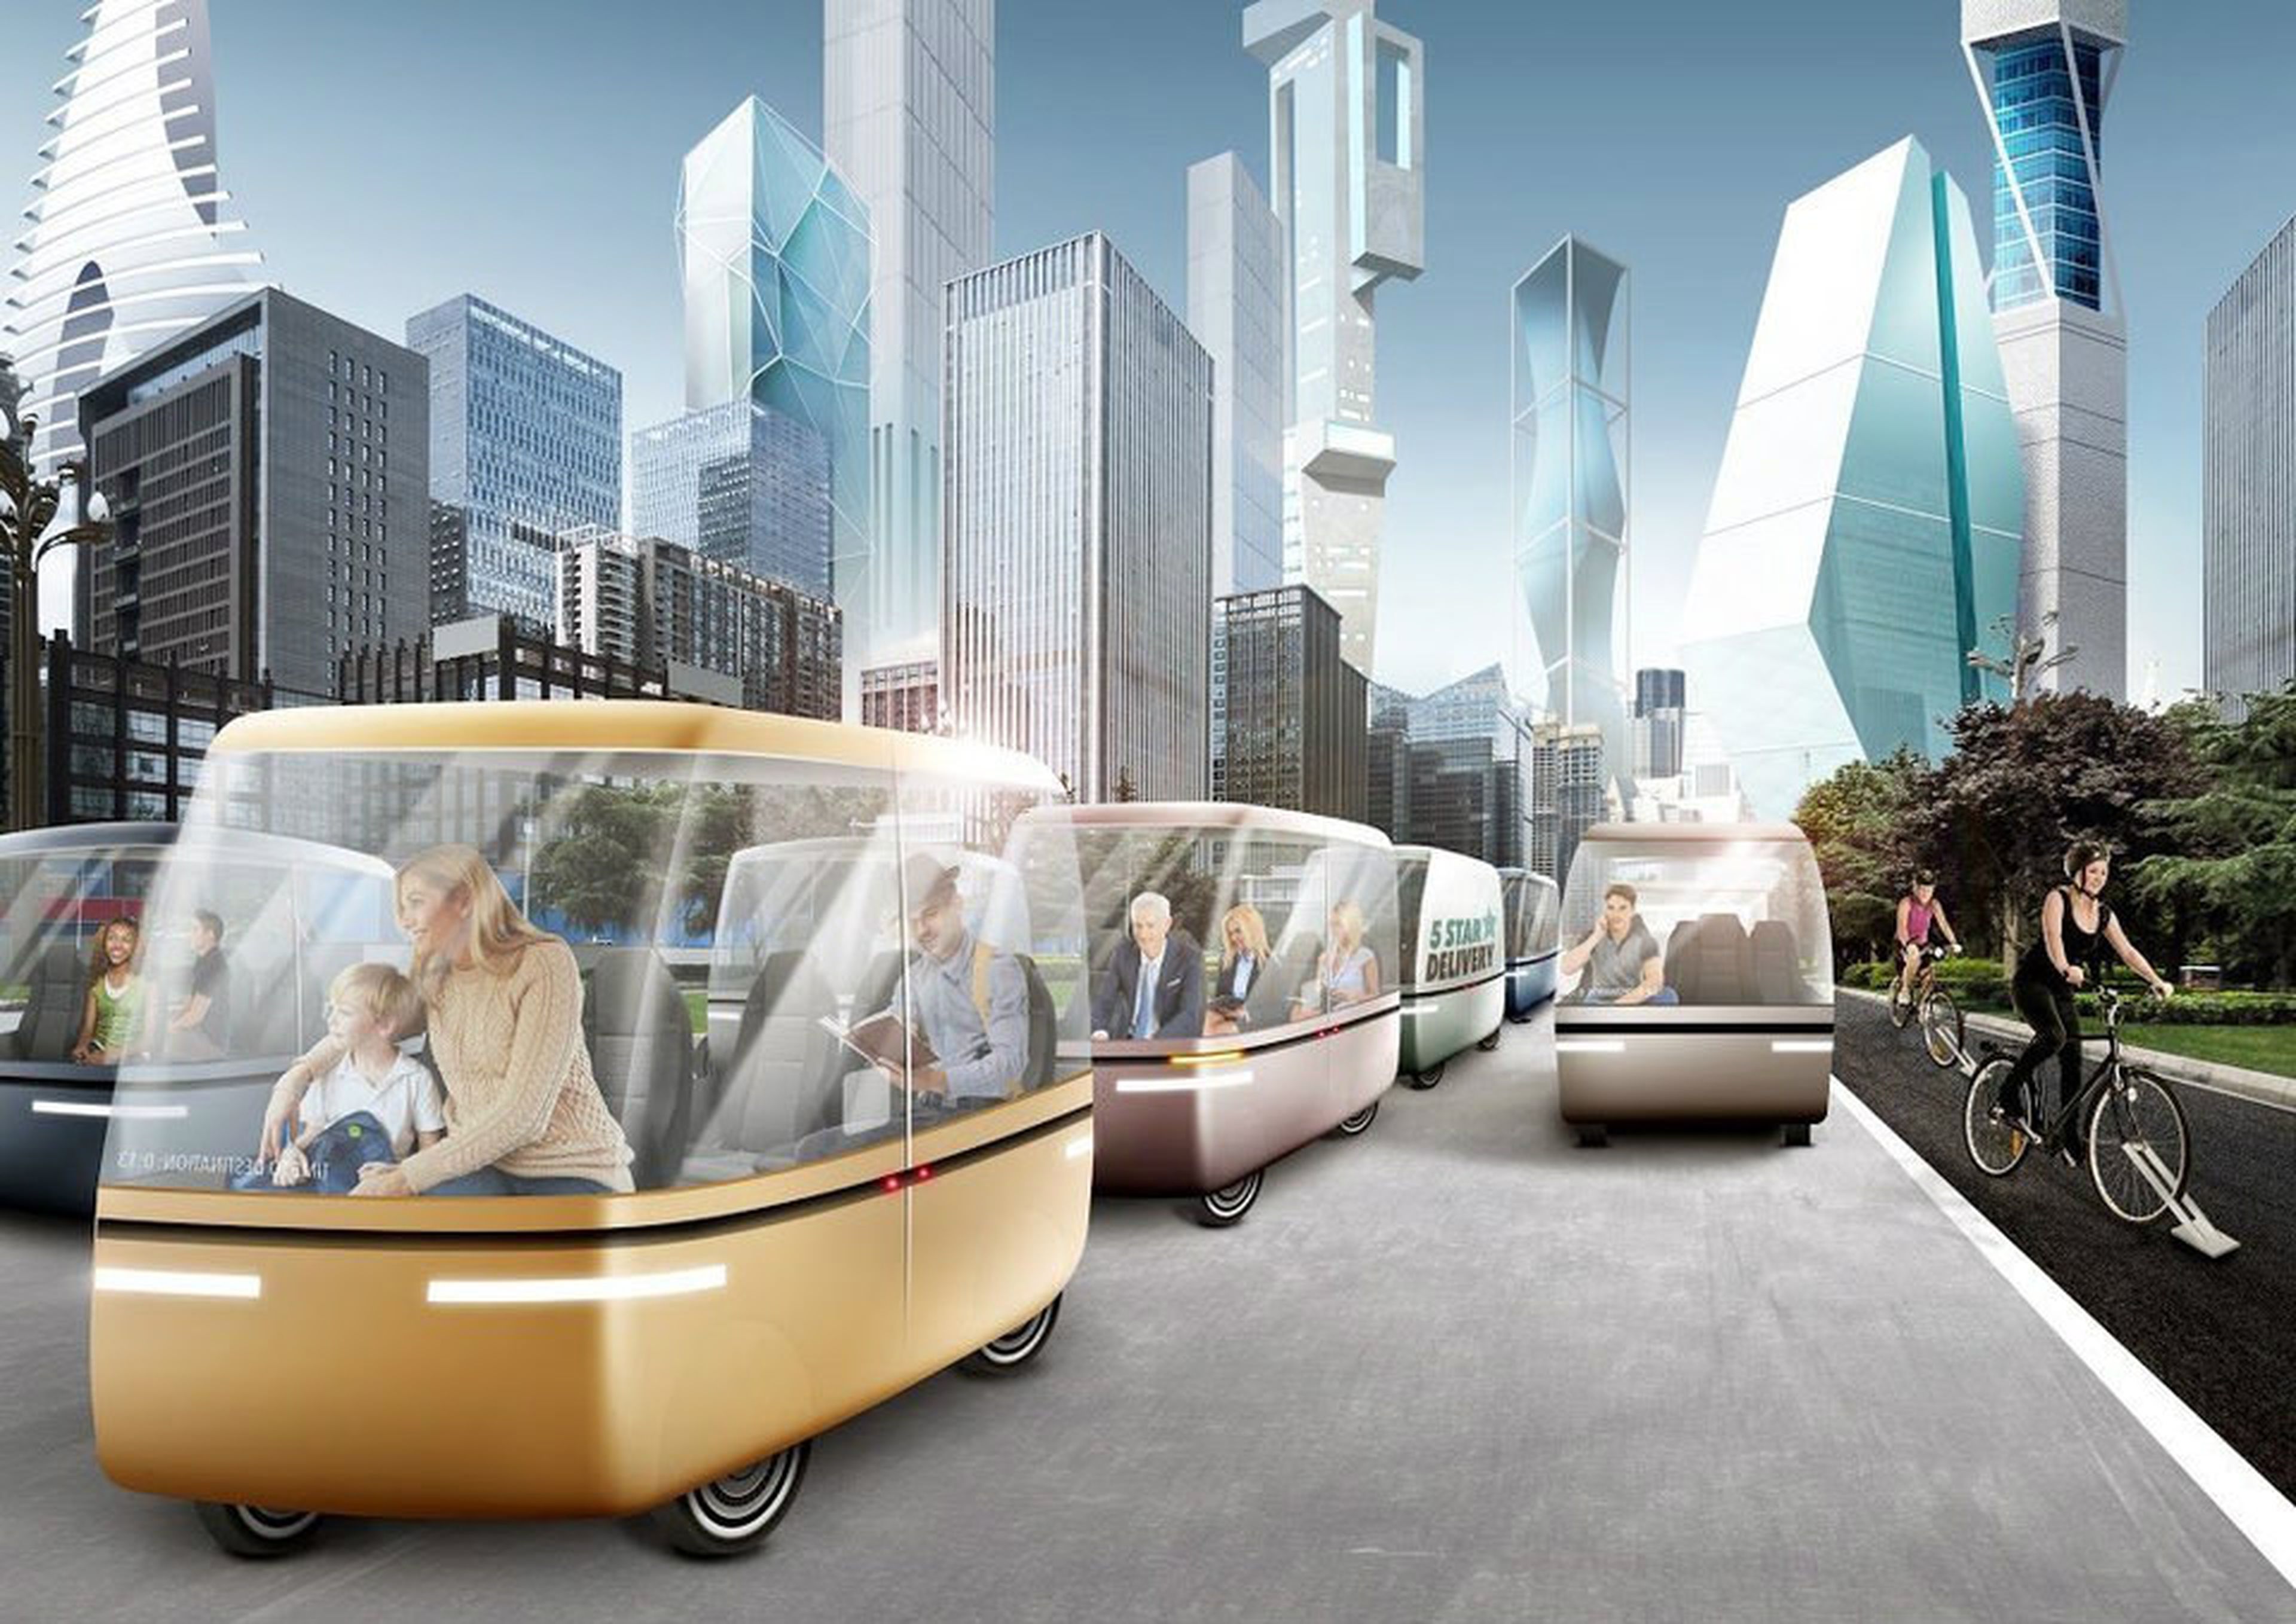 История в современной жизни человека. Транспорт будущего. Город будущего транспорт. Картинки будущего. Инновации в транспорте.